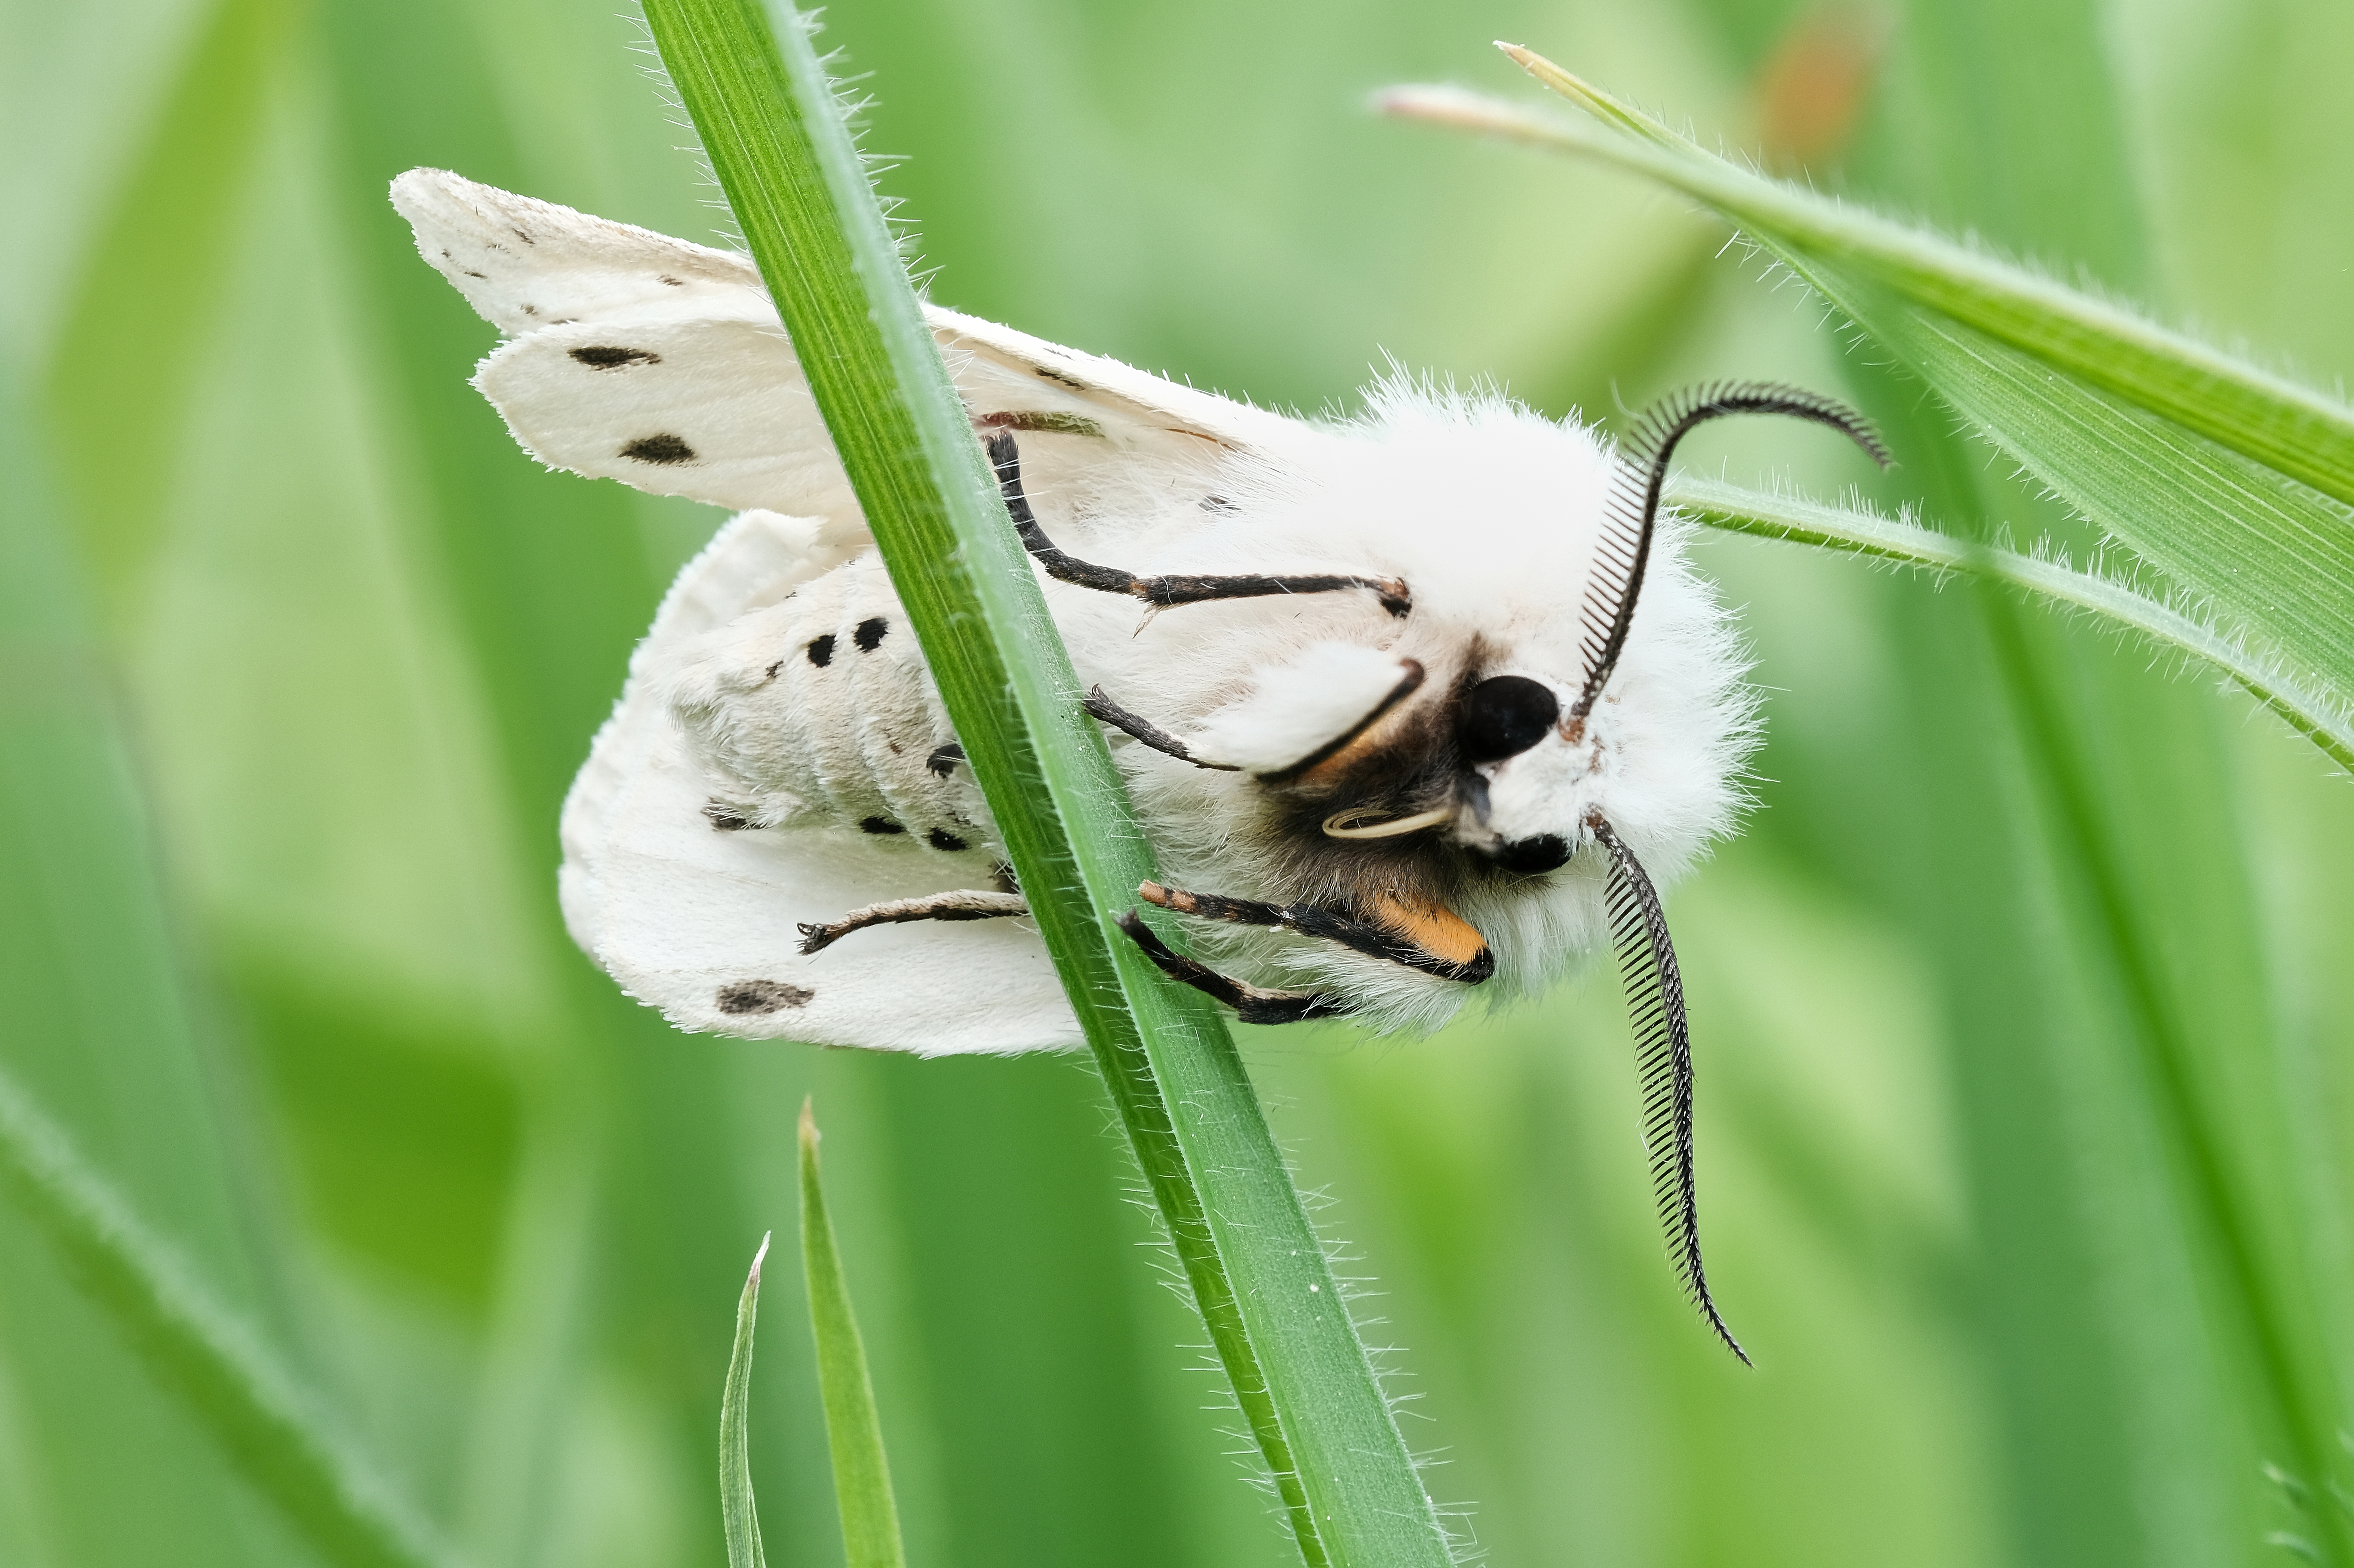 Breitflügeliger Fleckleibbär (Weiße Tigermotte) auf einem grünen Blatt sitzend